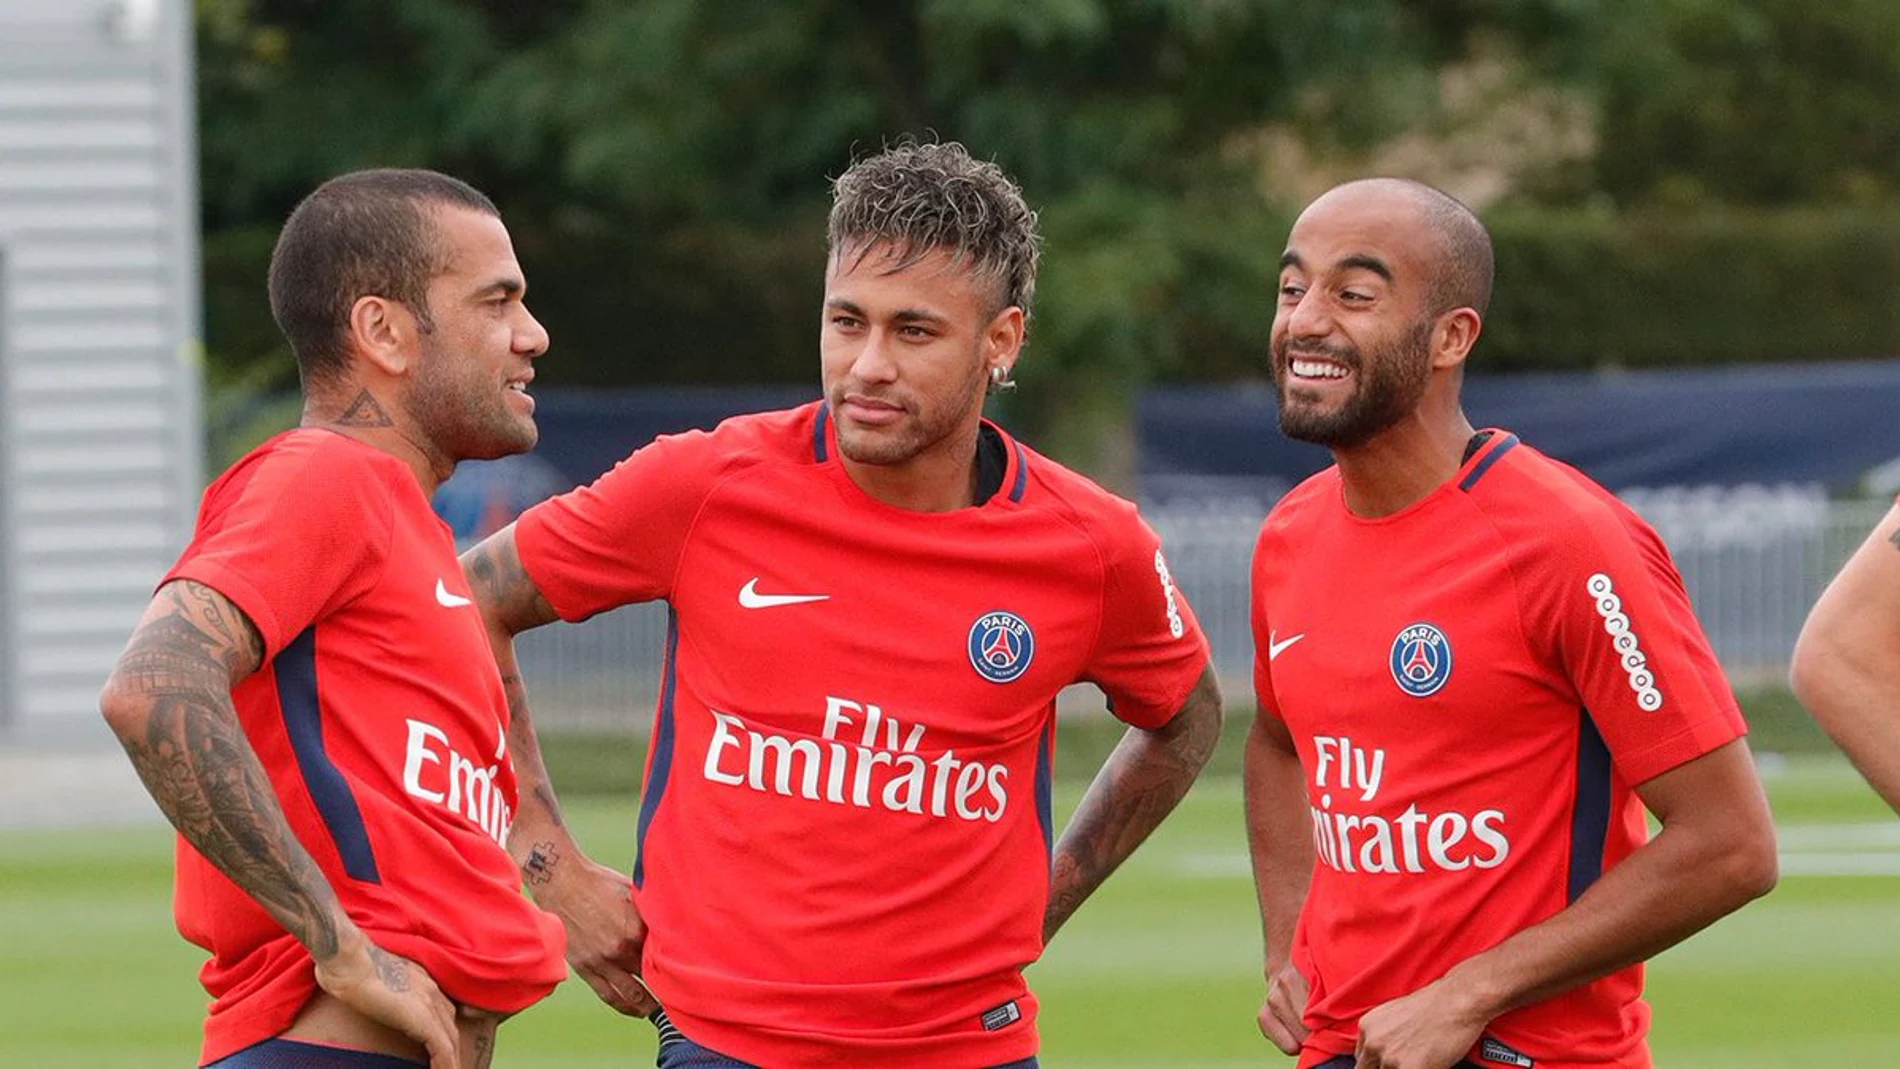 Neymar y Alves en el entrenamiento del PSG